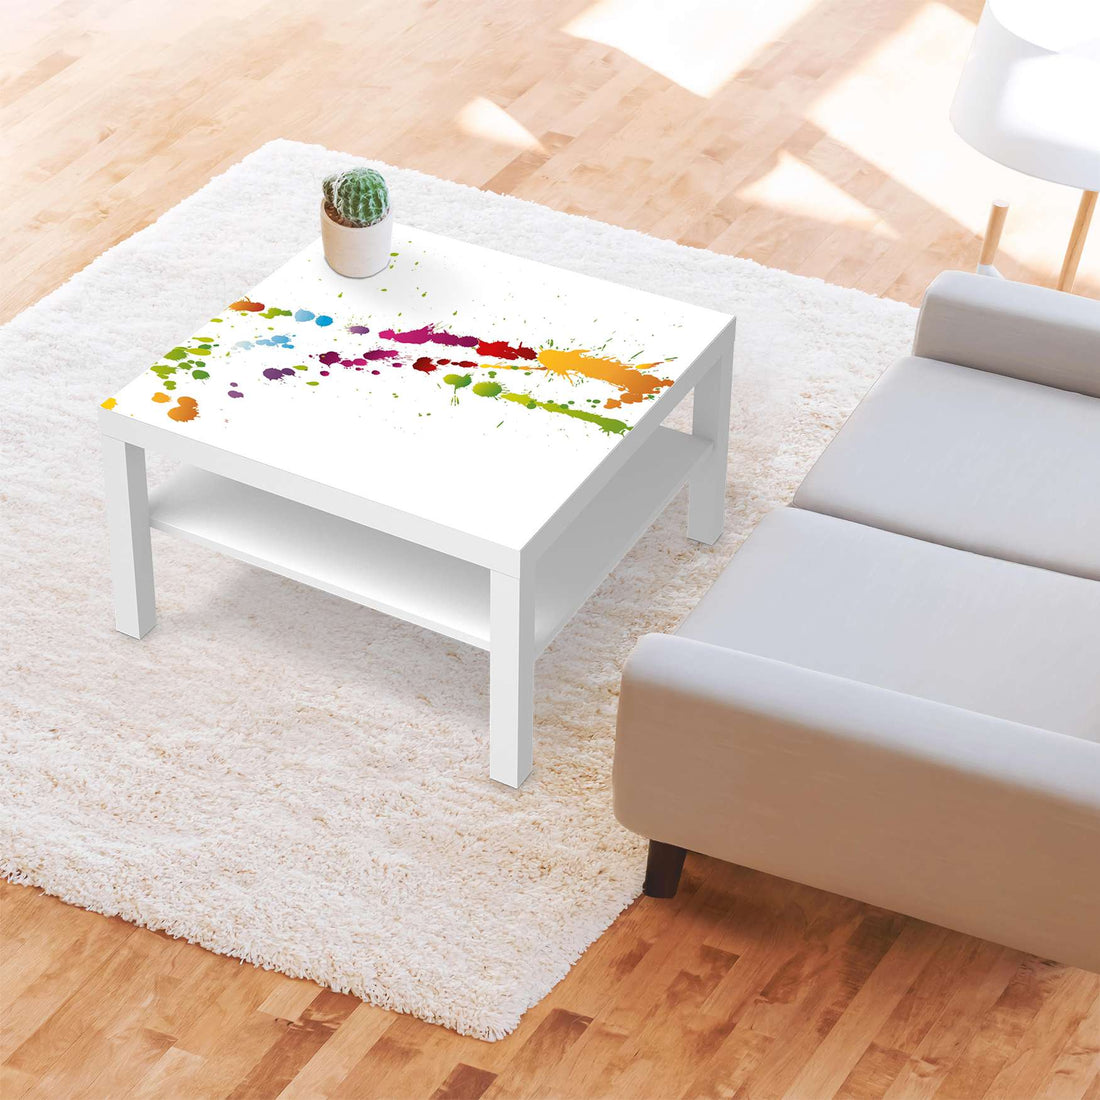 Selbstklebende Folie Splash 2 - IKEA Lack Tisch 78x78 cm - Wohnzimmer